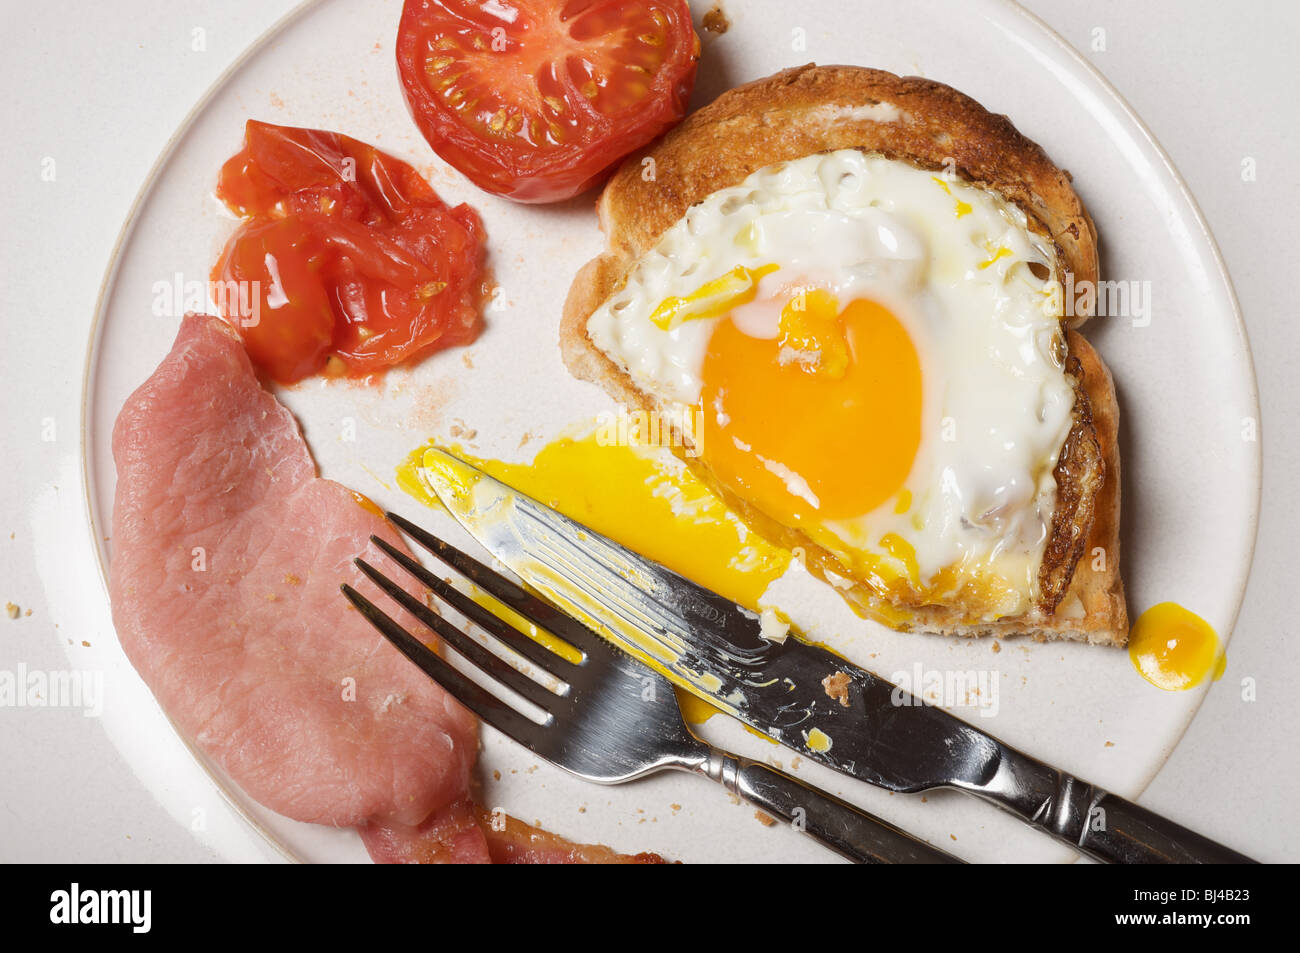 Half-eaten English breakfast Stock Photo